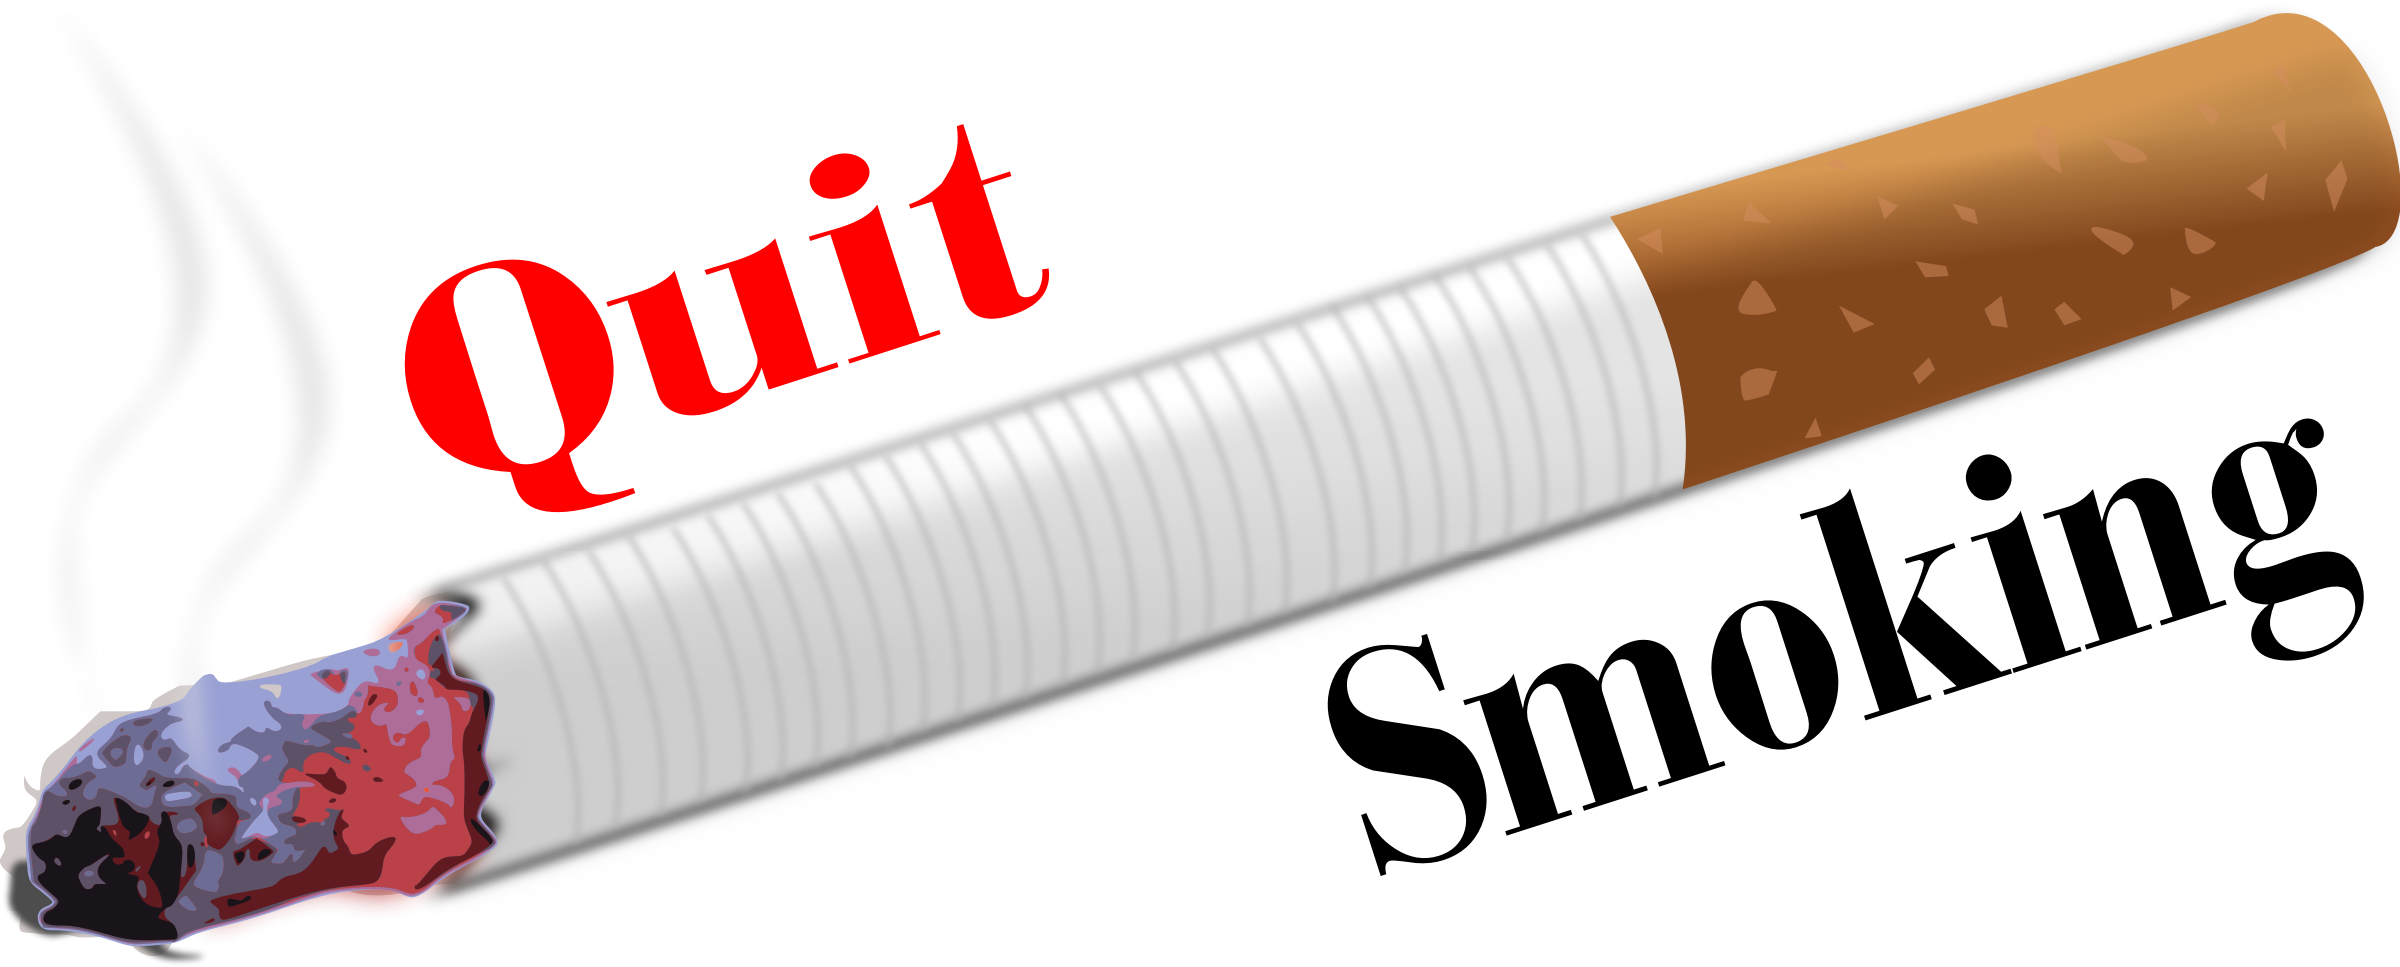 Quit Smoking Remix - Quit Smoking Clip Art (2400x967)